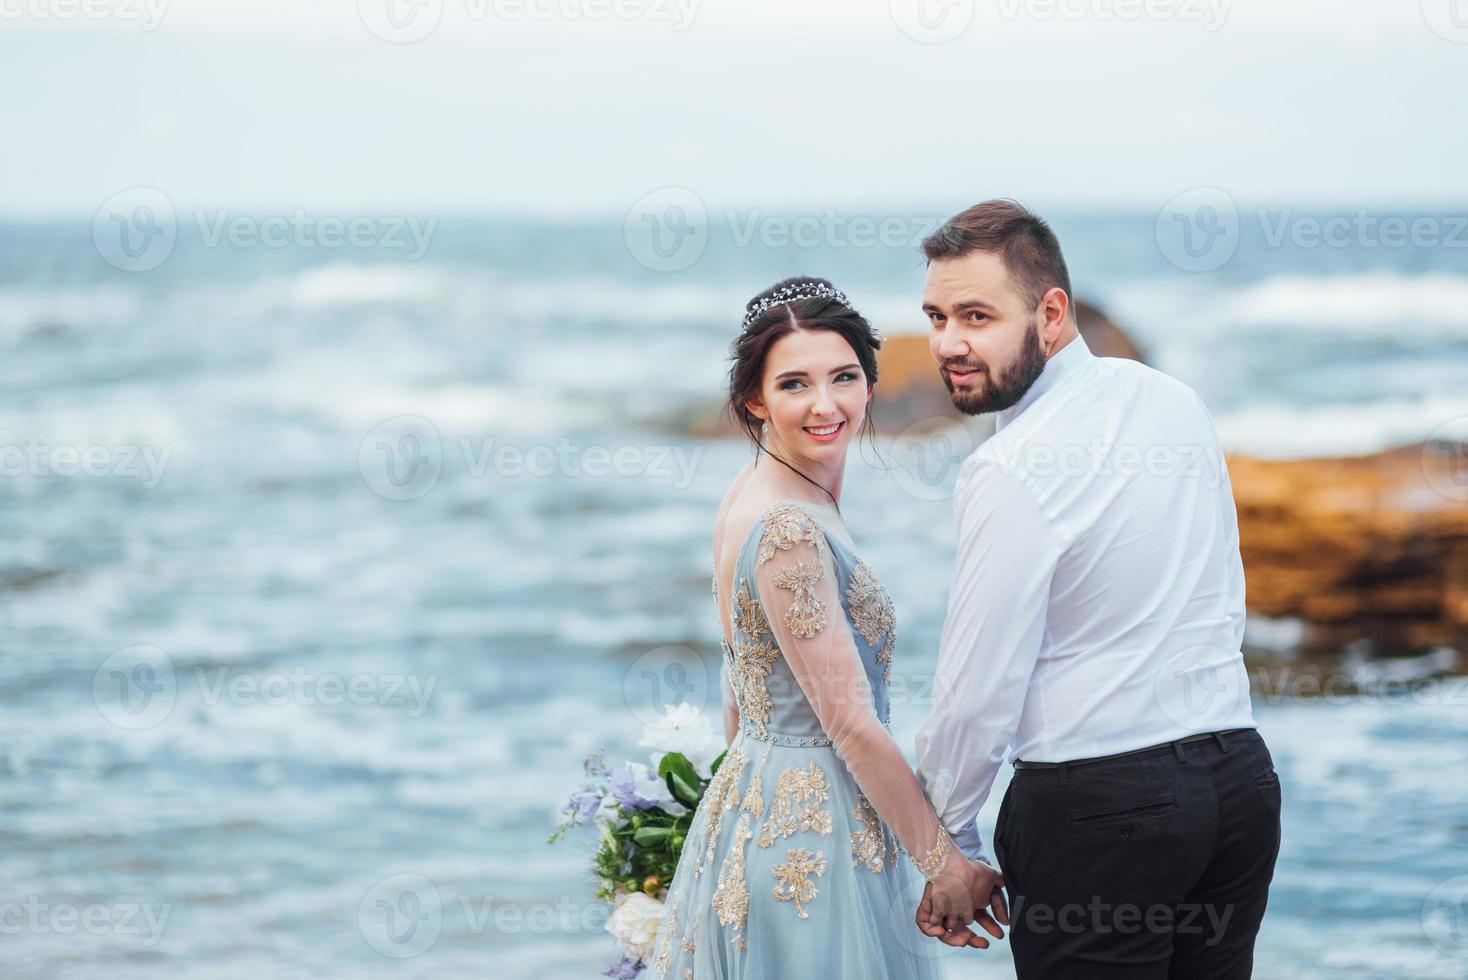 samma par med en brud i en blå klänning promenad foto